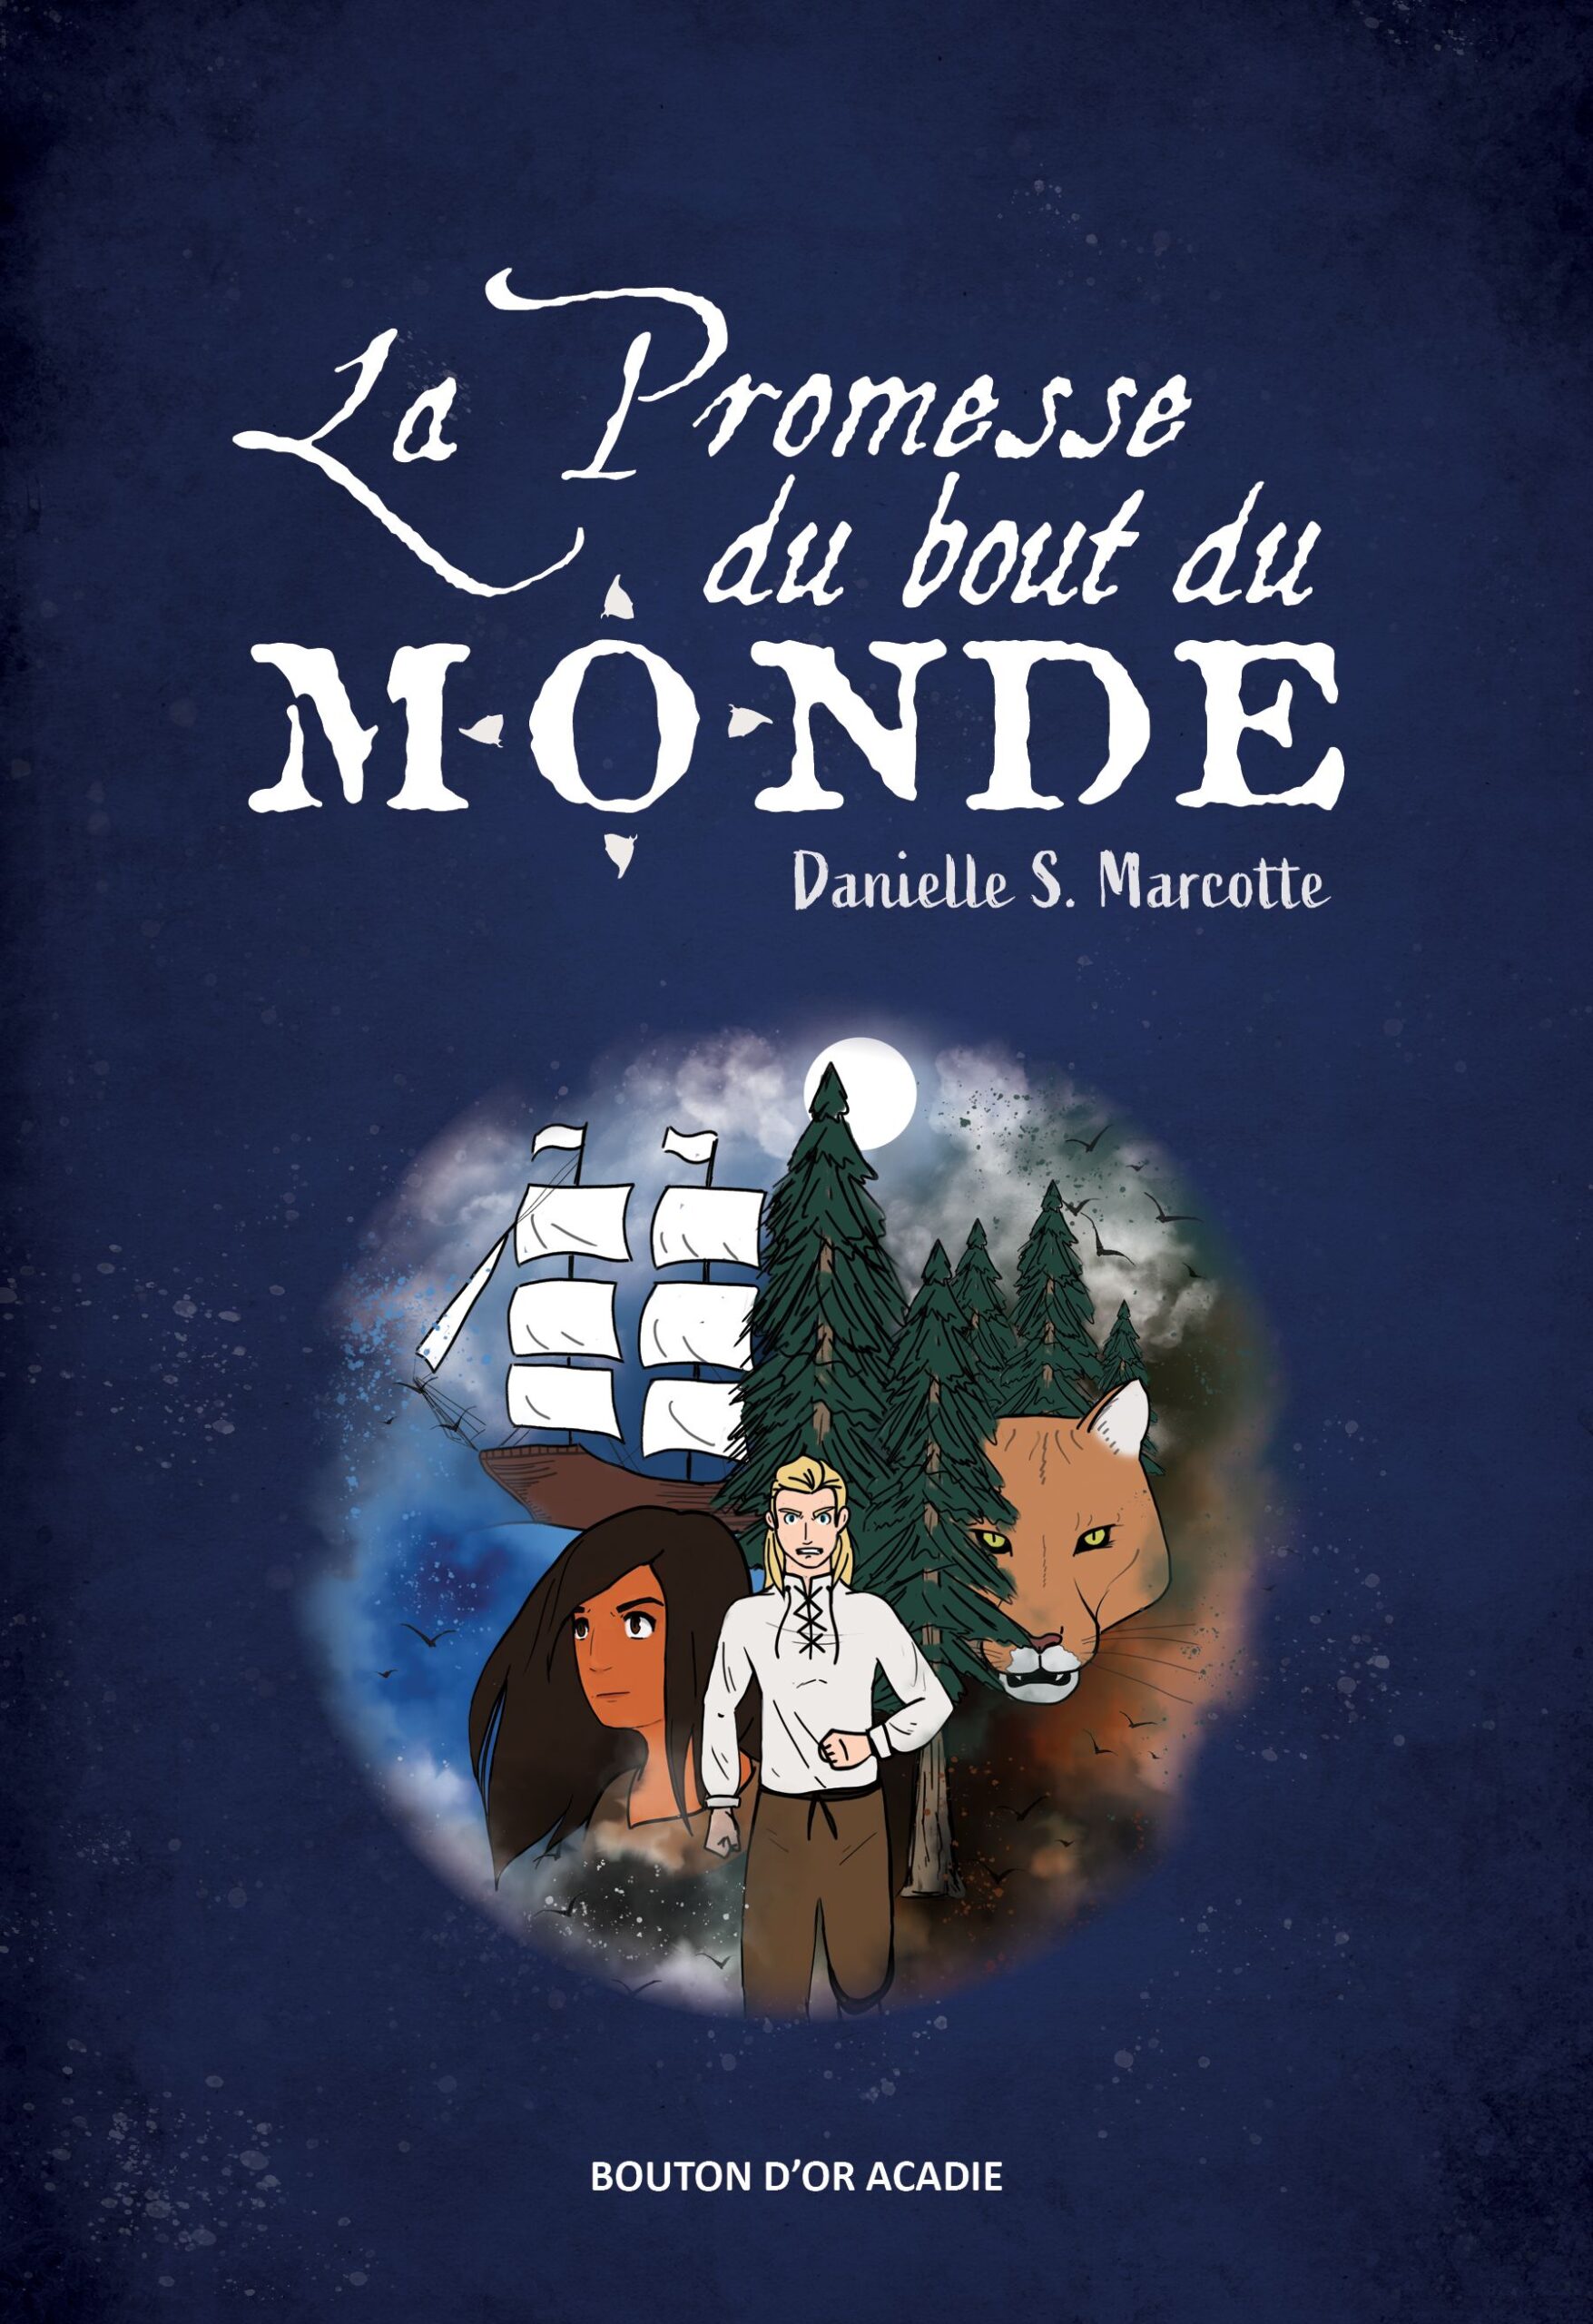 Young Reader Review: La Promesse du bout du monde by Danielle S. Marcotte